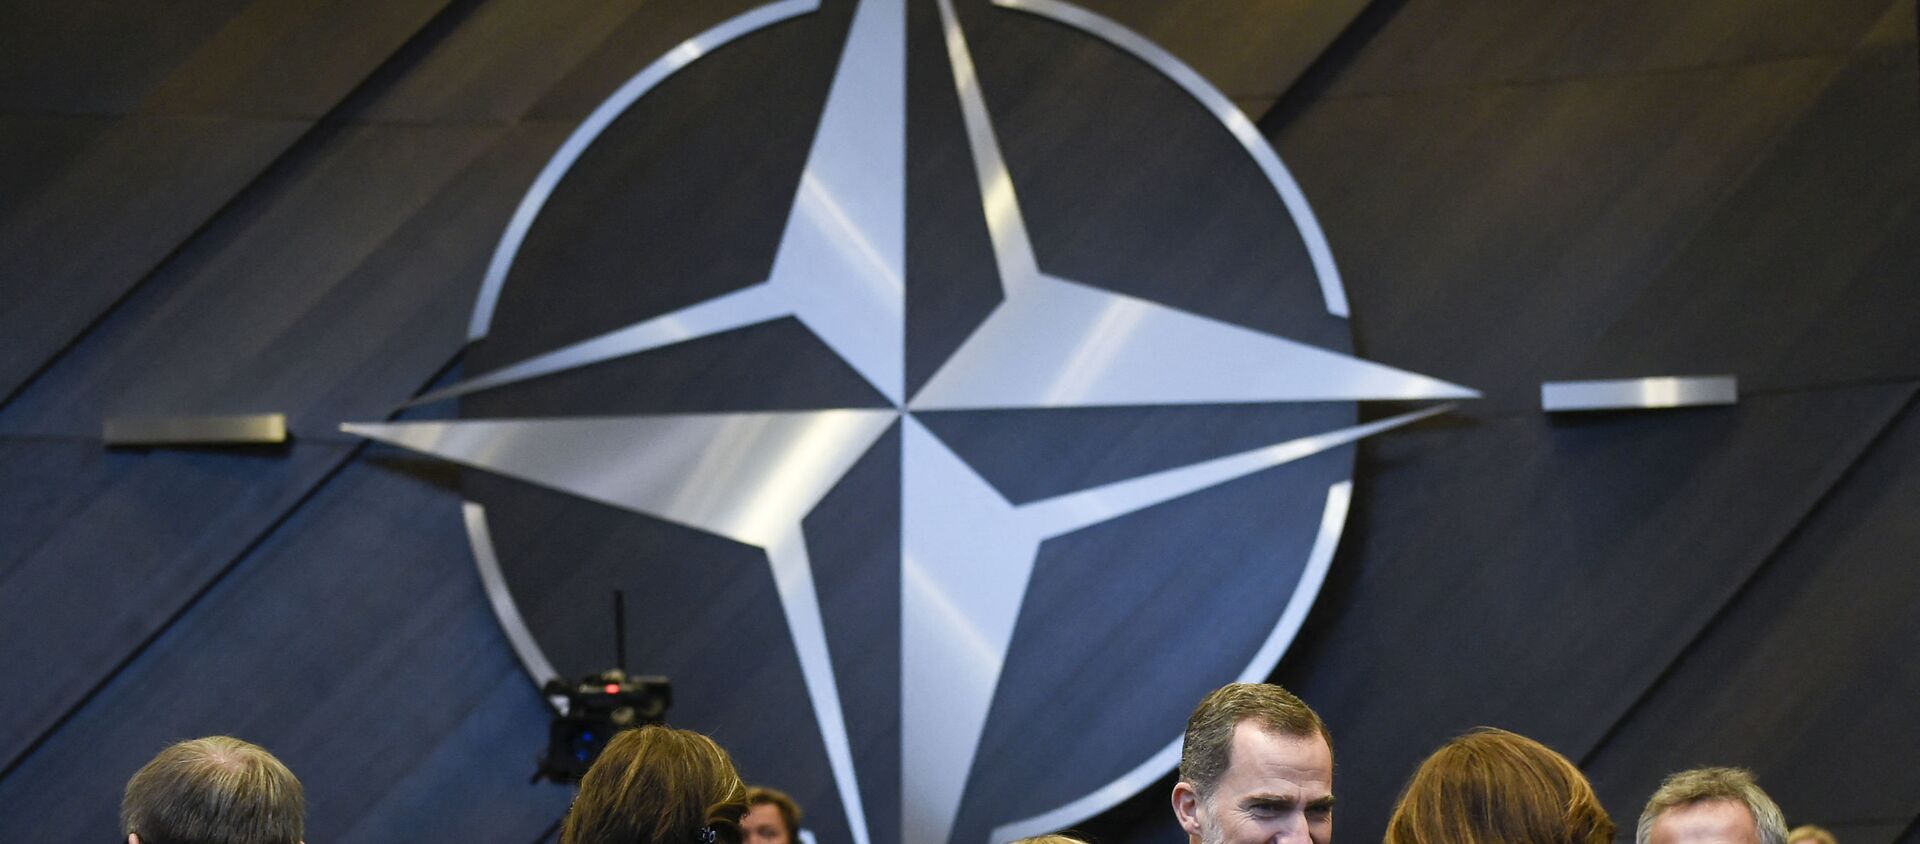 Король Испании Фелипе VI (слева) и генеральный секретарь НАТО Йенс Столтенберг (справа) участвуют во встрече по Северной Атлантике во время визита в штаб-квартиру НАТО в Брюсселе 21 ноября 2018 г - Sputnik Абхазия, 1920, 02.03.2021